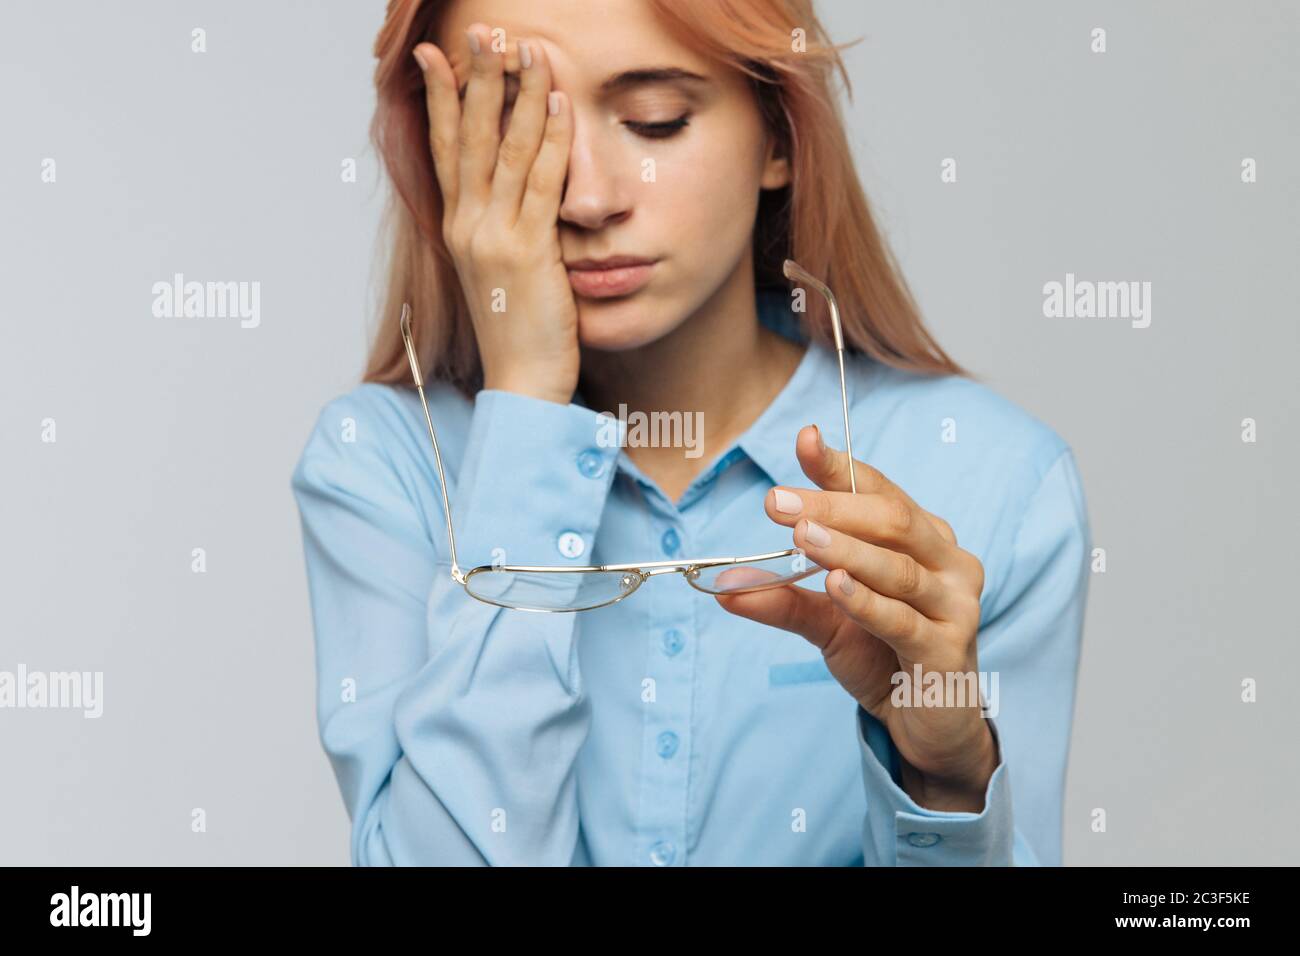 Porträt der jungen kaukasischen Frau mit Brille halten in der Hand reiben ihre Augen, fühlt sich müde nach der Arbeit auf Laptop, konzentrieren sich auf Brille. Überlastung, Reifen Stockfoto